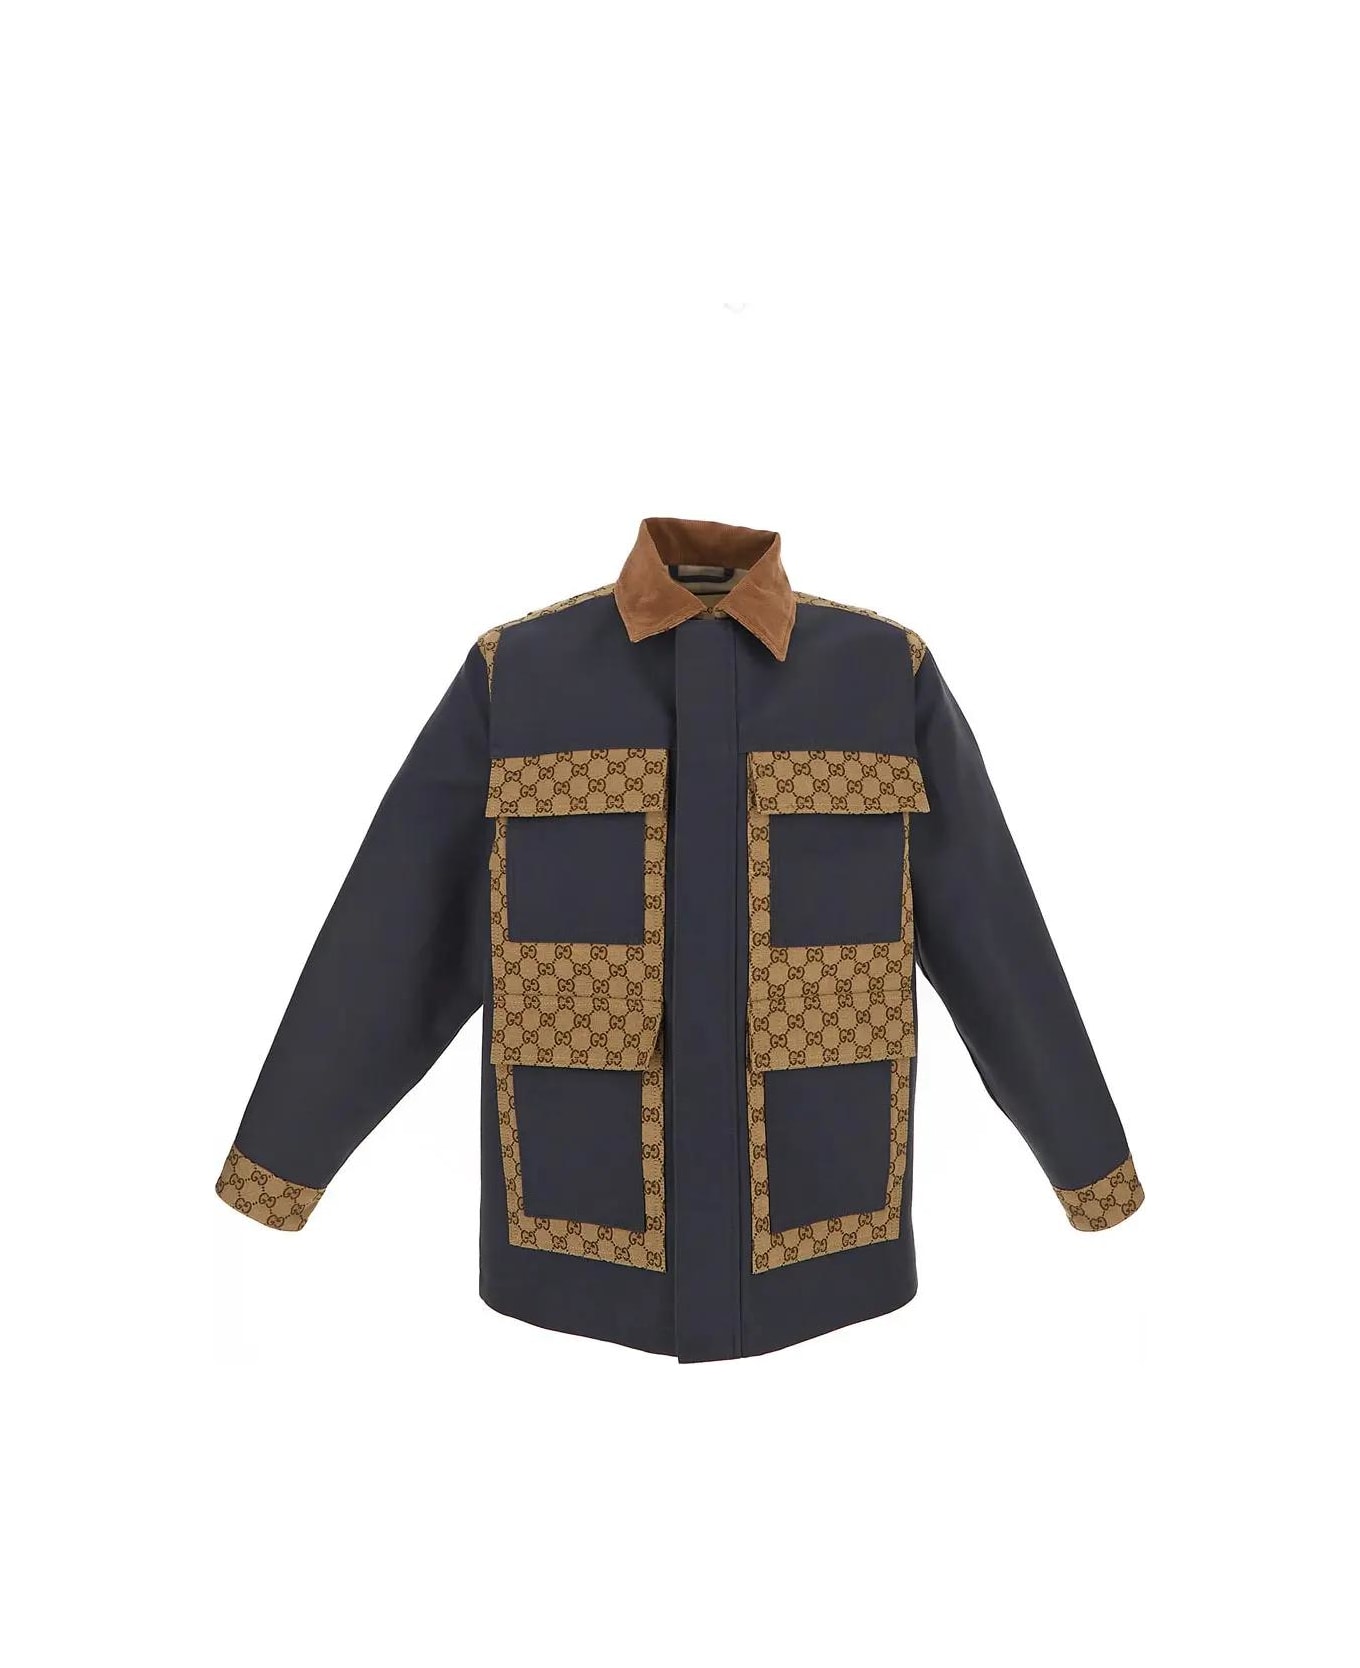 Gucci Cotton Gg Supreme Jacket